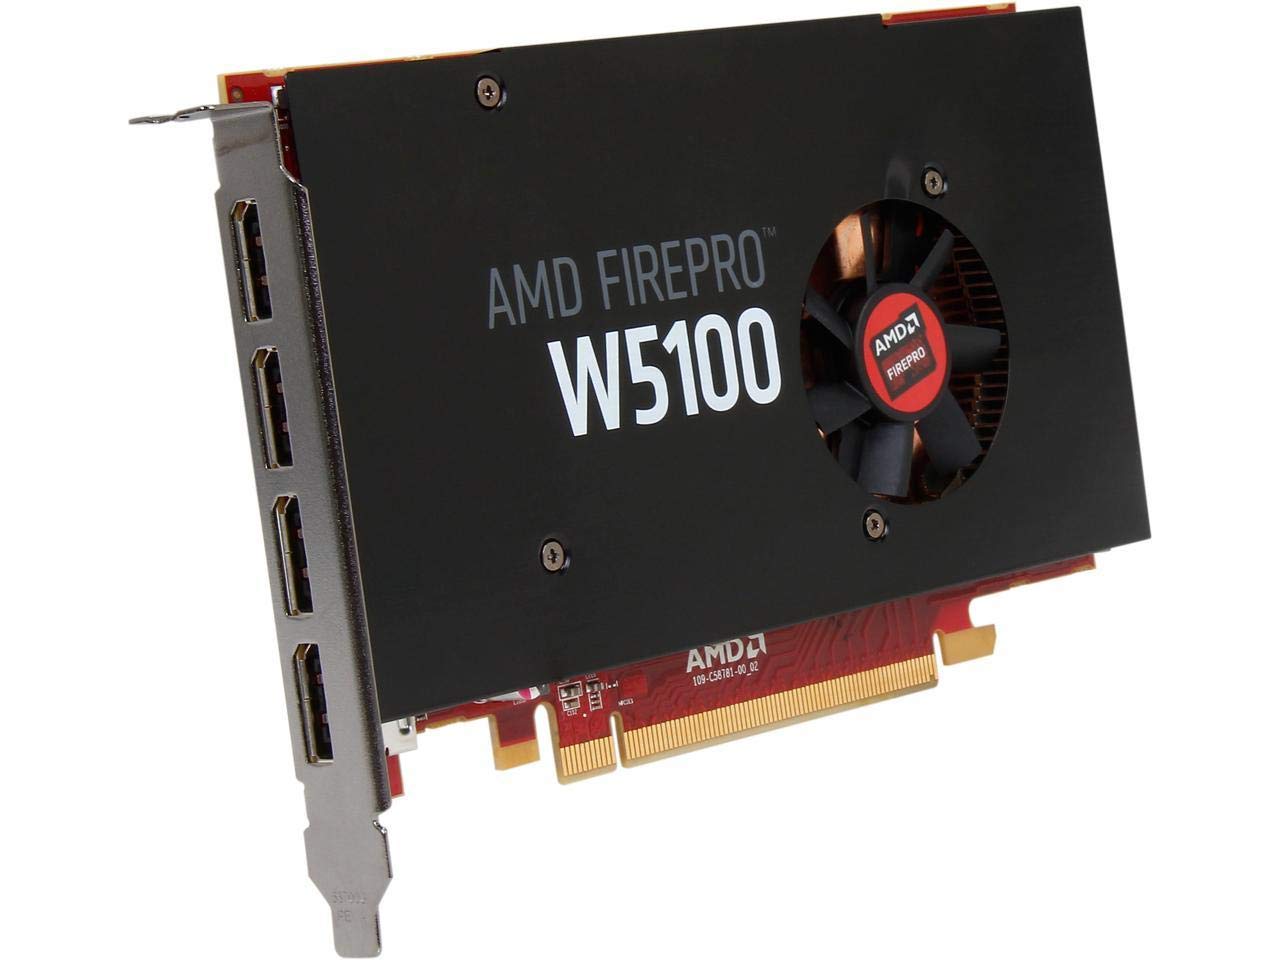 AMD FirePro W5100 4GB GDDR5 PCIe Gen 3.0 Professional Graphics Card, 1.43TFLOPS, 768 Cores 4x DisplayPorts 1.2 OEM - Plain Box (Renewed)